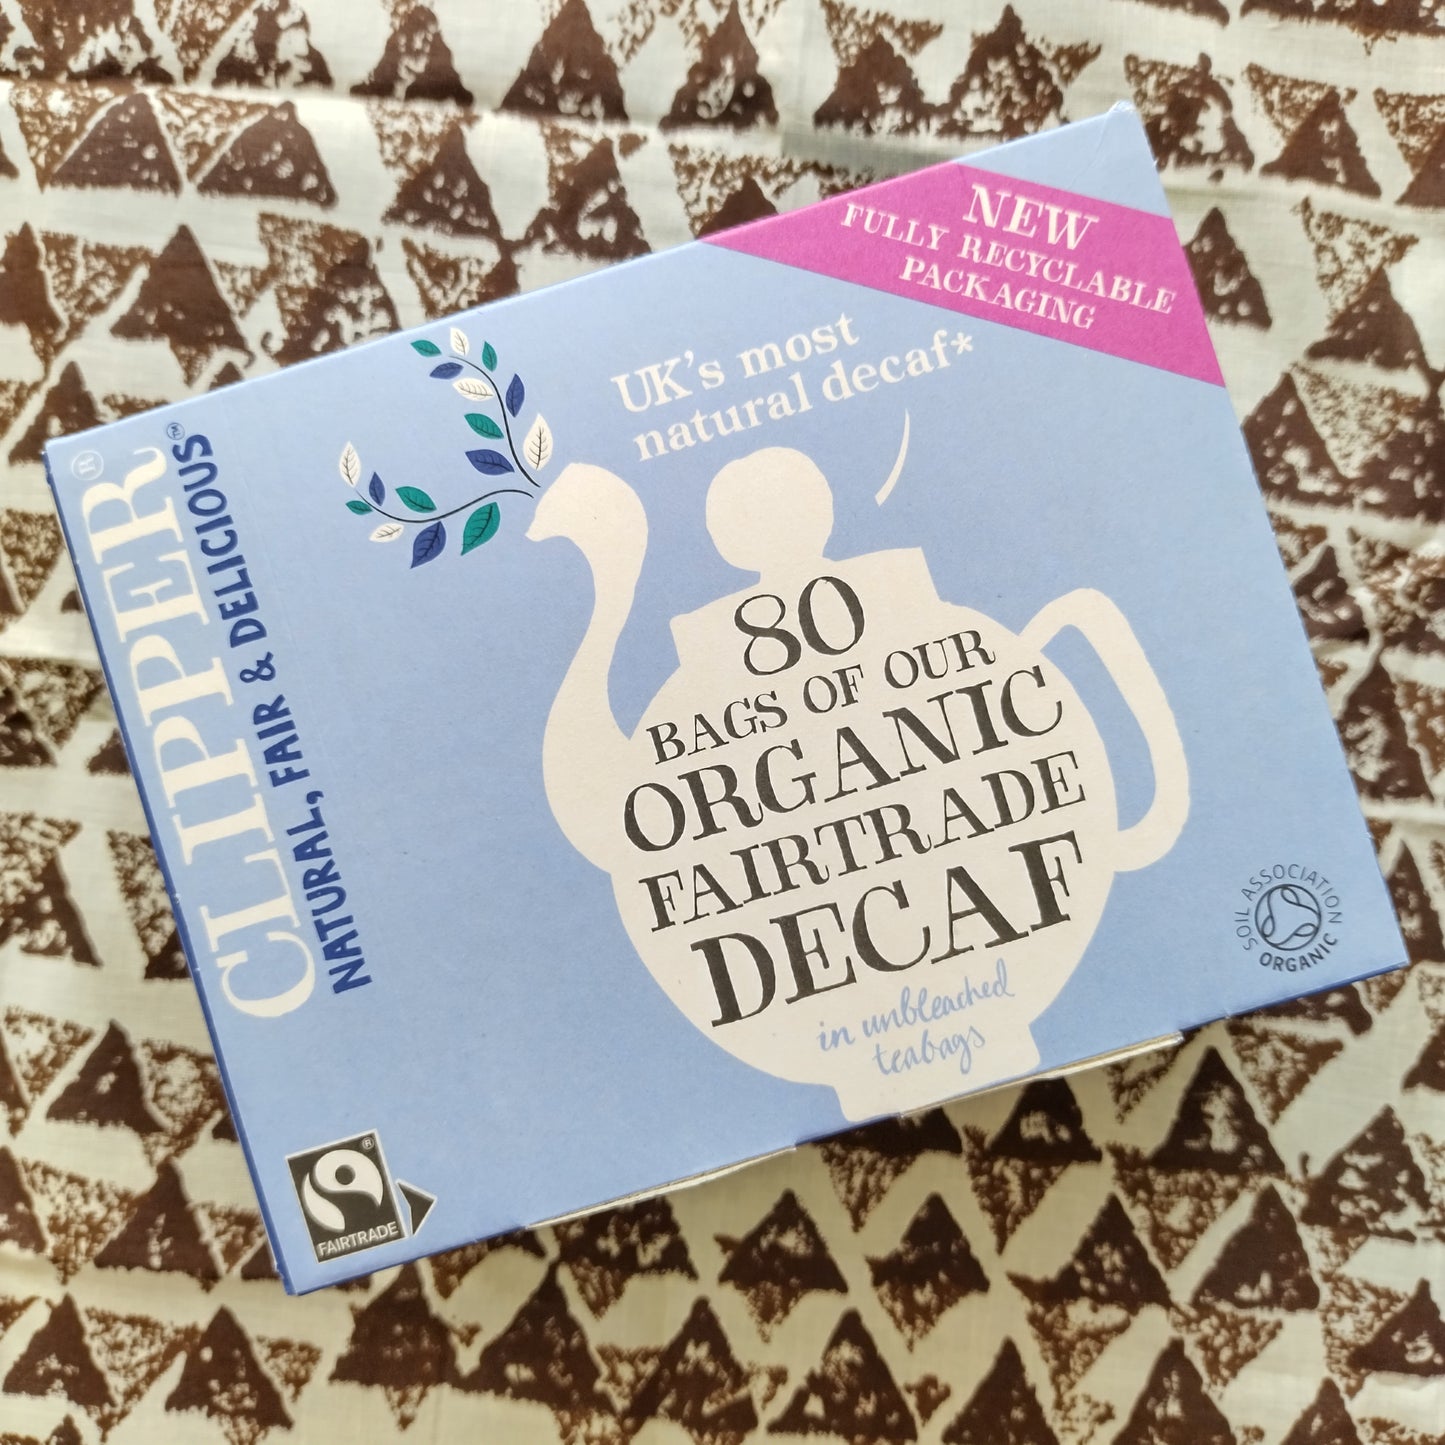 Clipper Organic Decaf Tea x 80 Bags